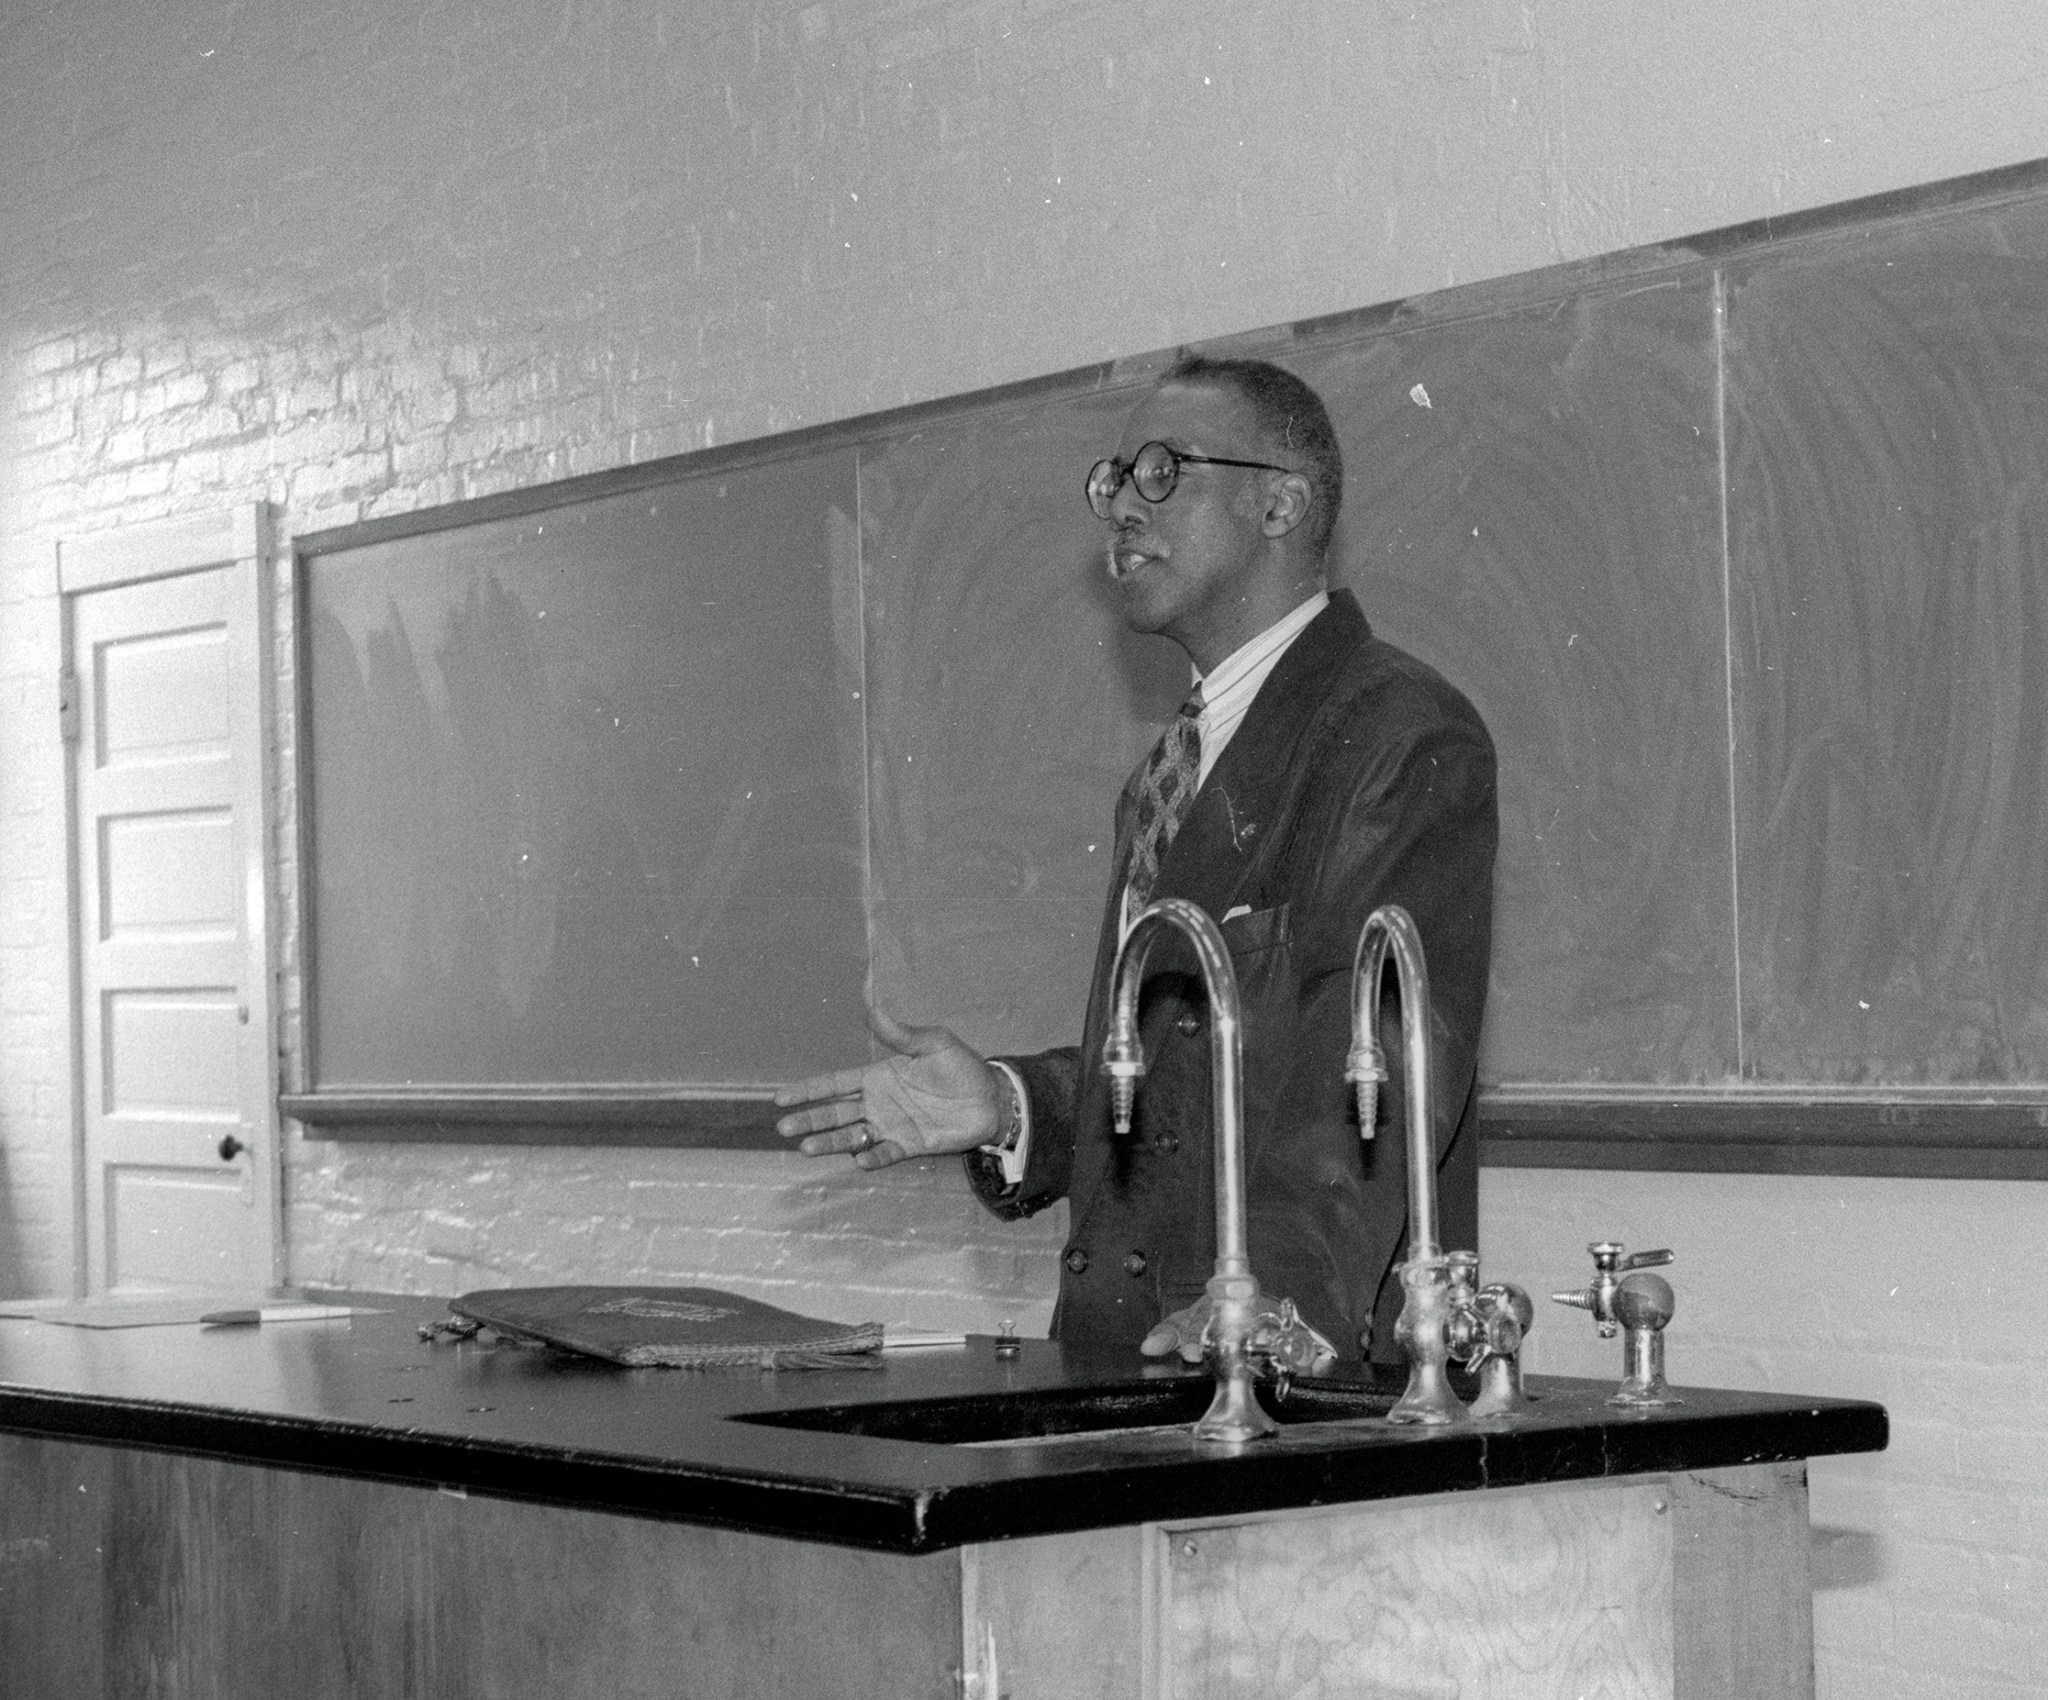 Man talking in front of blackboard.